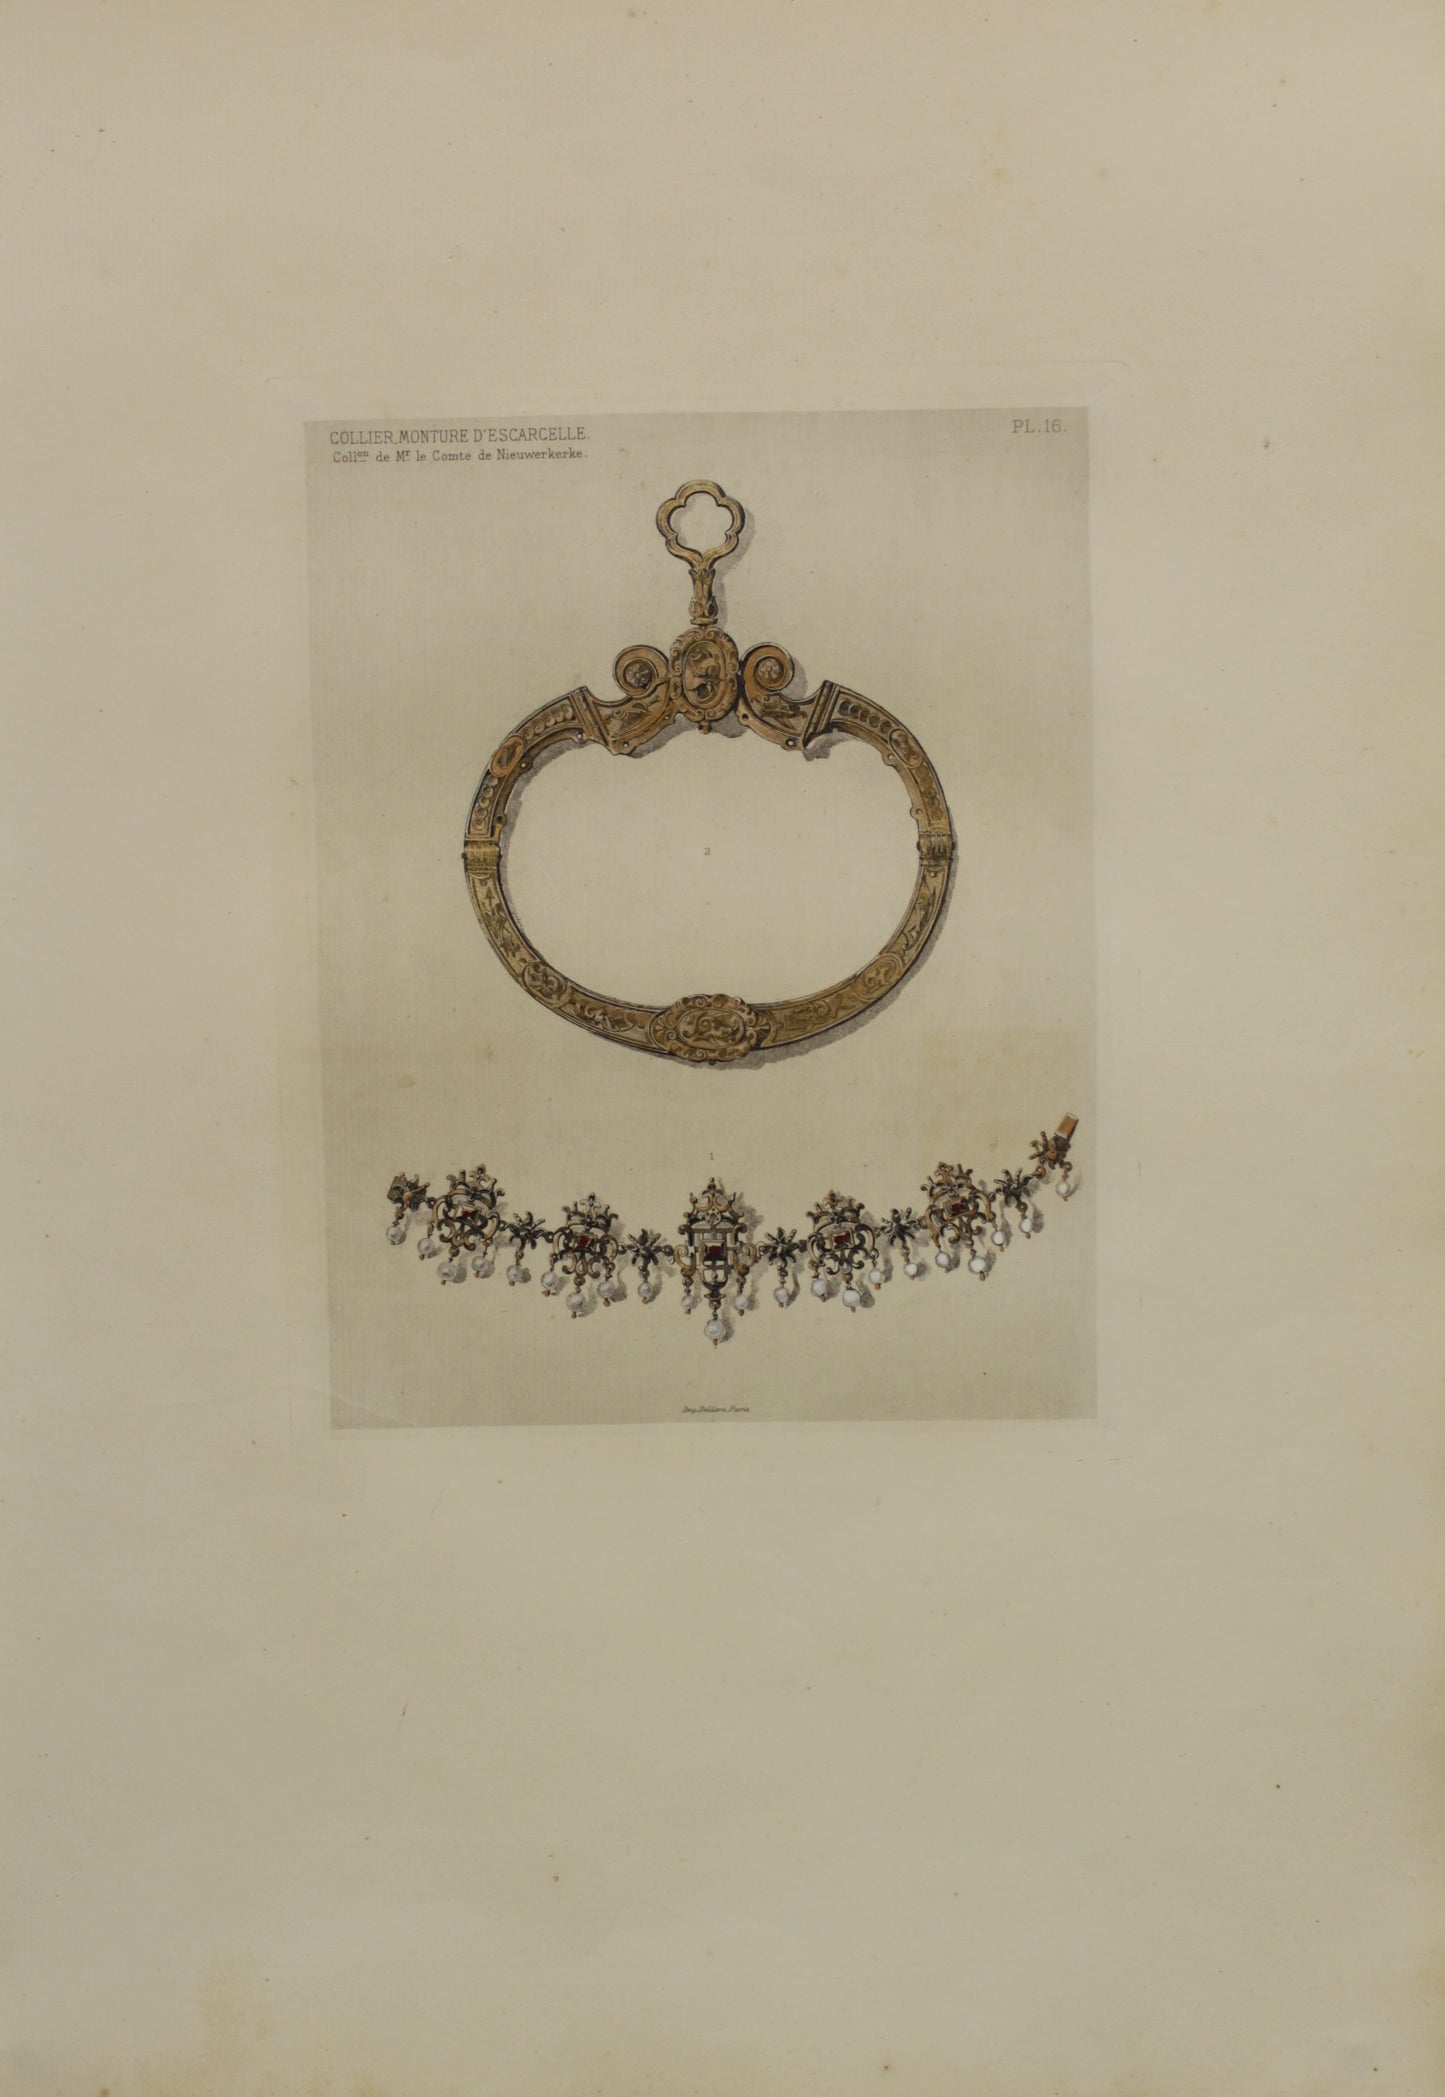 Decorator, Les Collections, Celebres, D'Oeuvres D'Art, Nieuwerkerke, Collier Monture D'Escarcelle, Plate 16, 1864